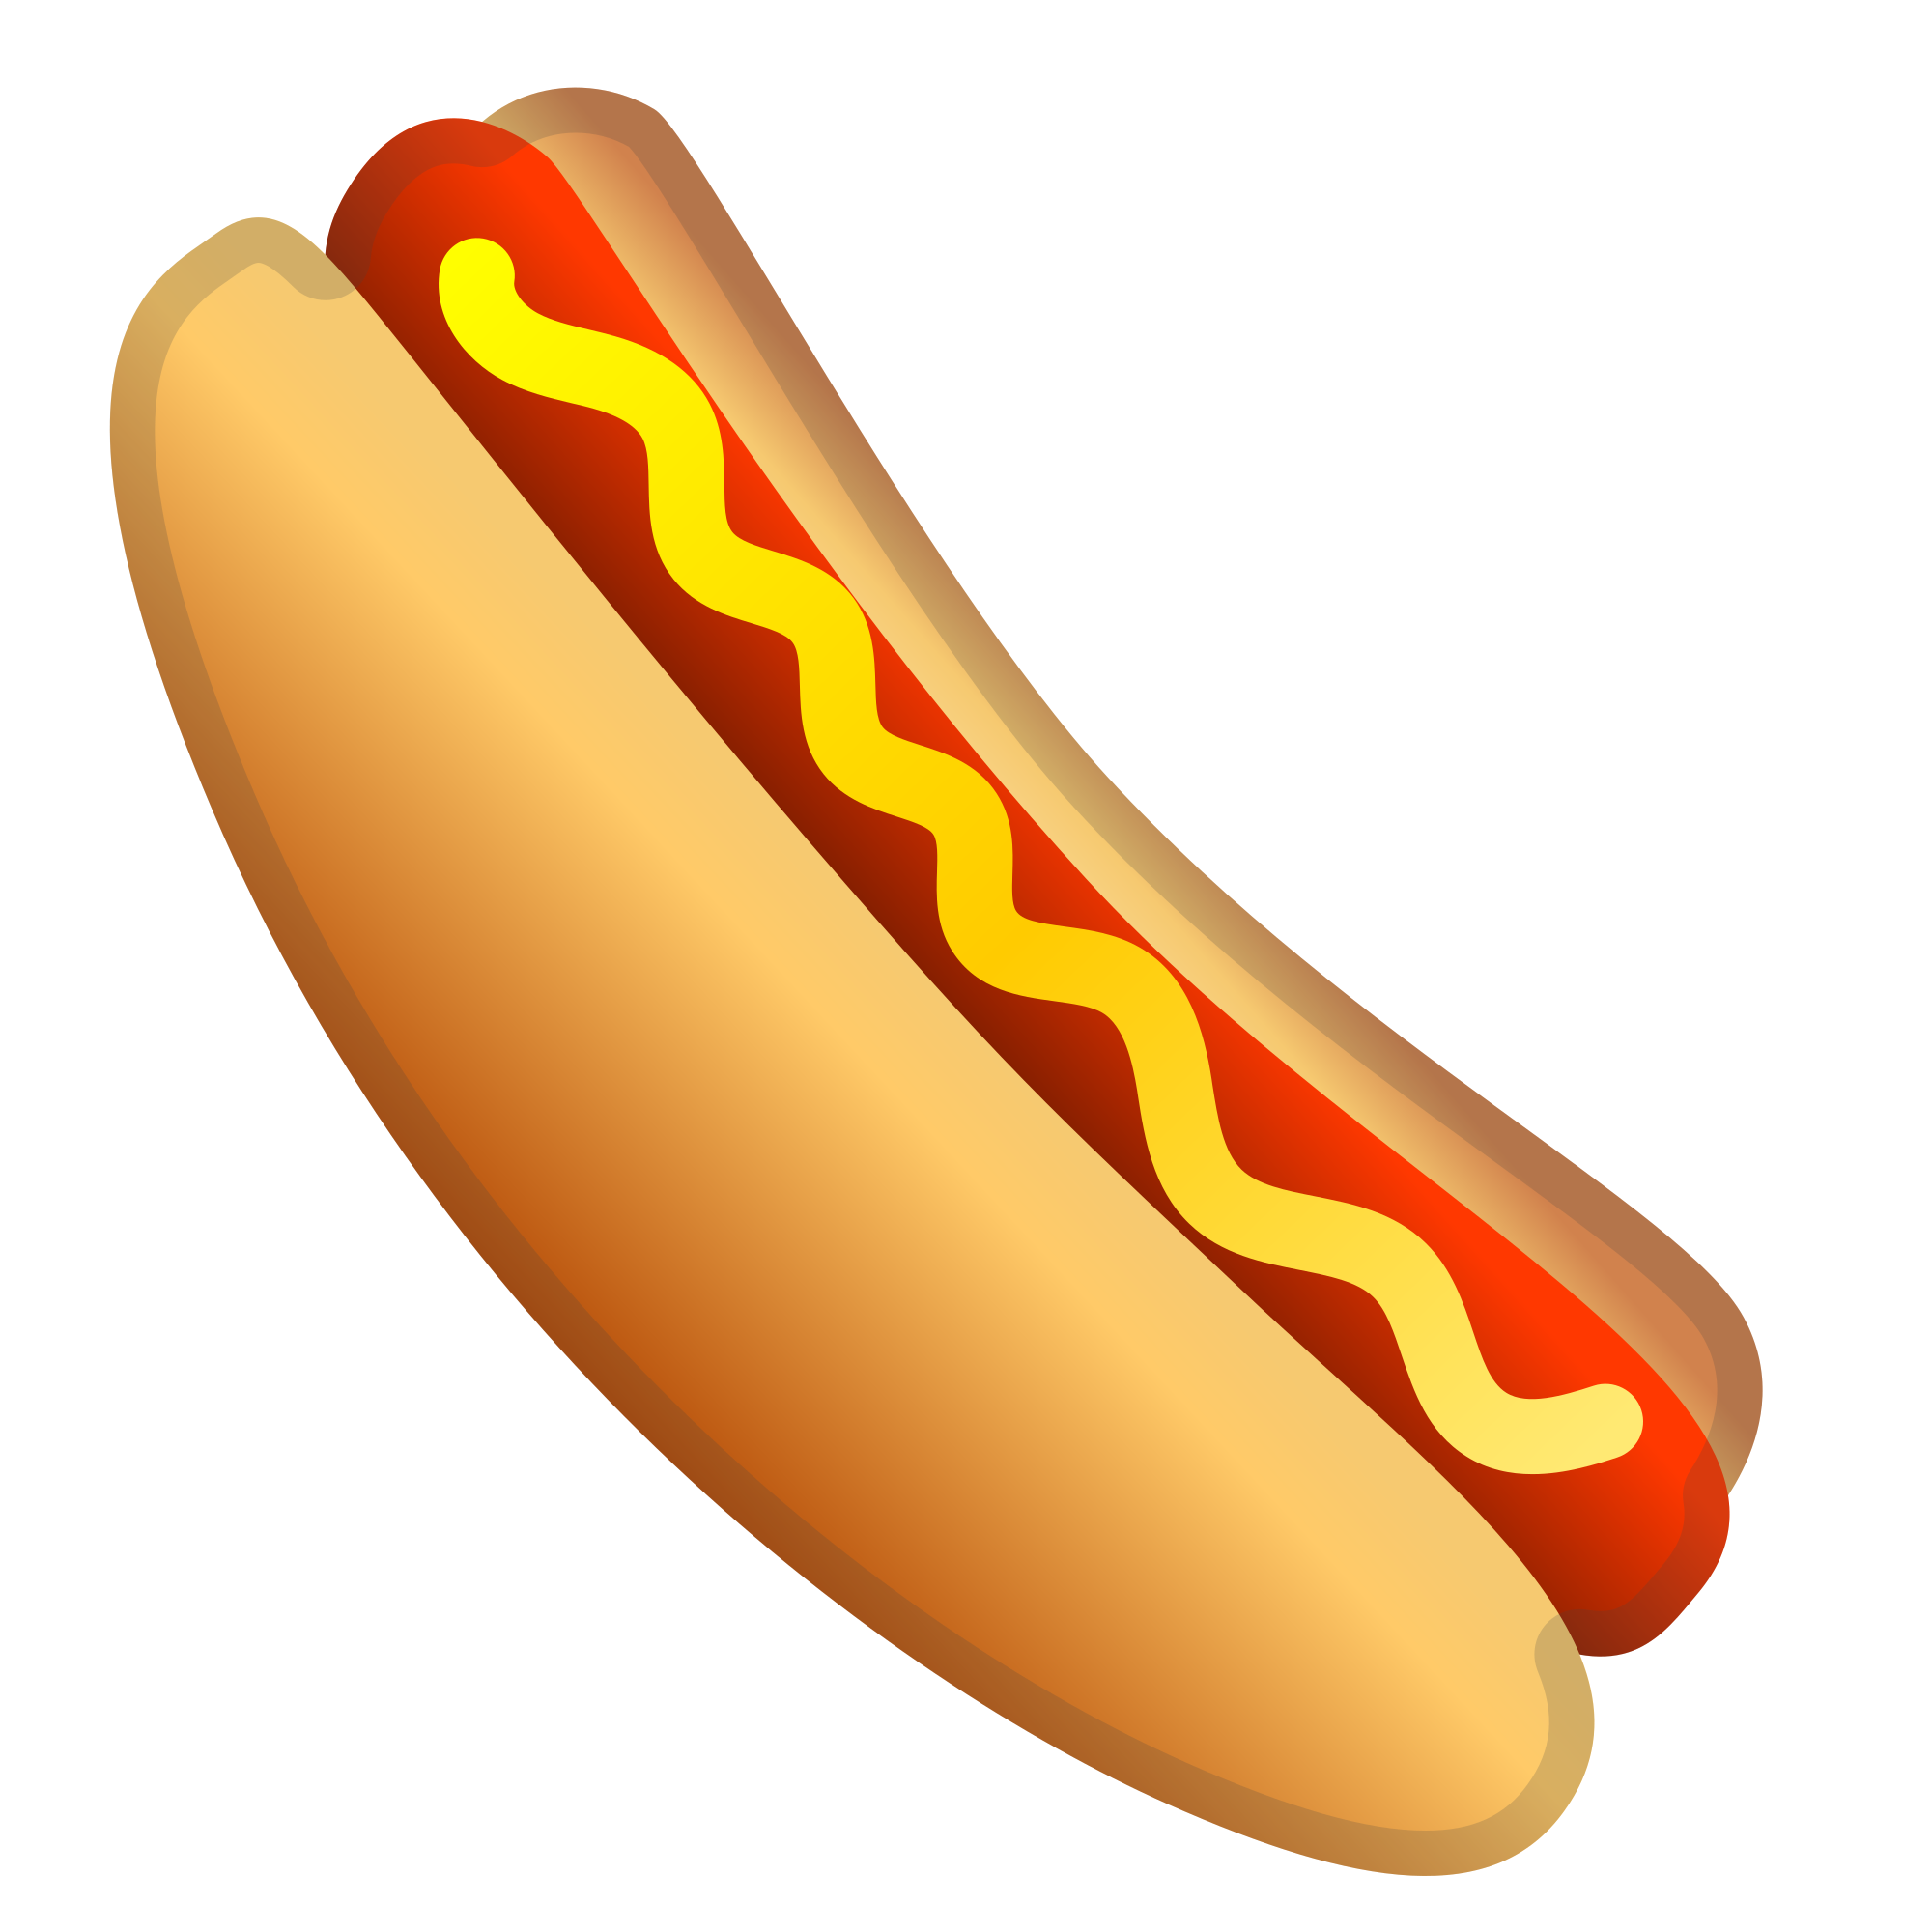 Hotdog clipart svg, Hotdog svg Transparent FREE for download on